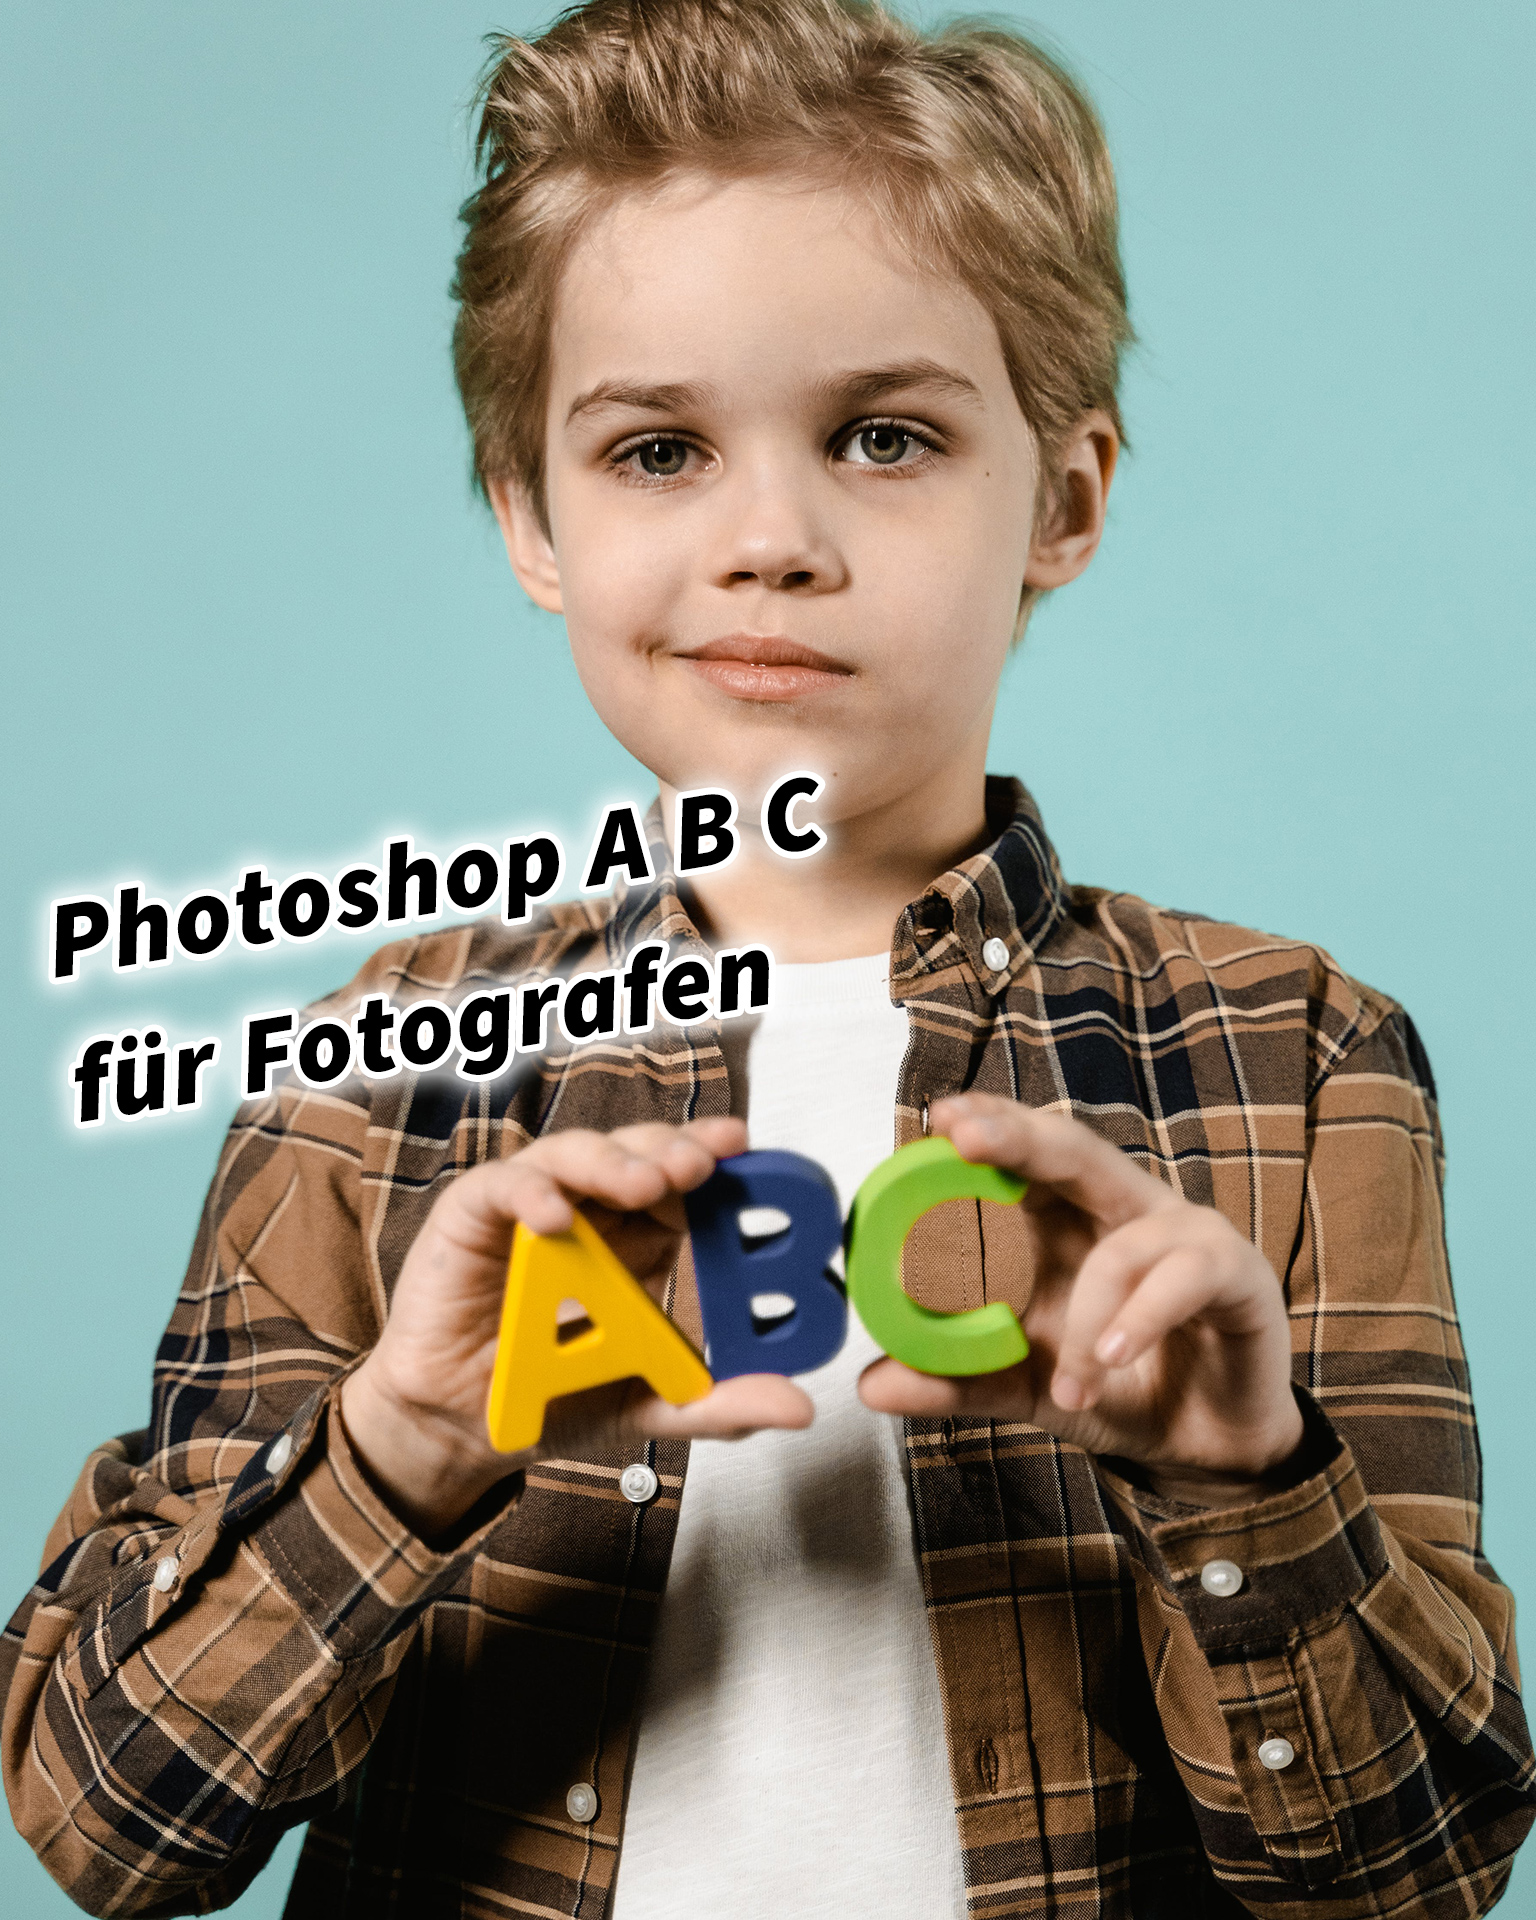 Photoshop A B C für Fotografen